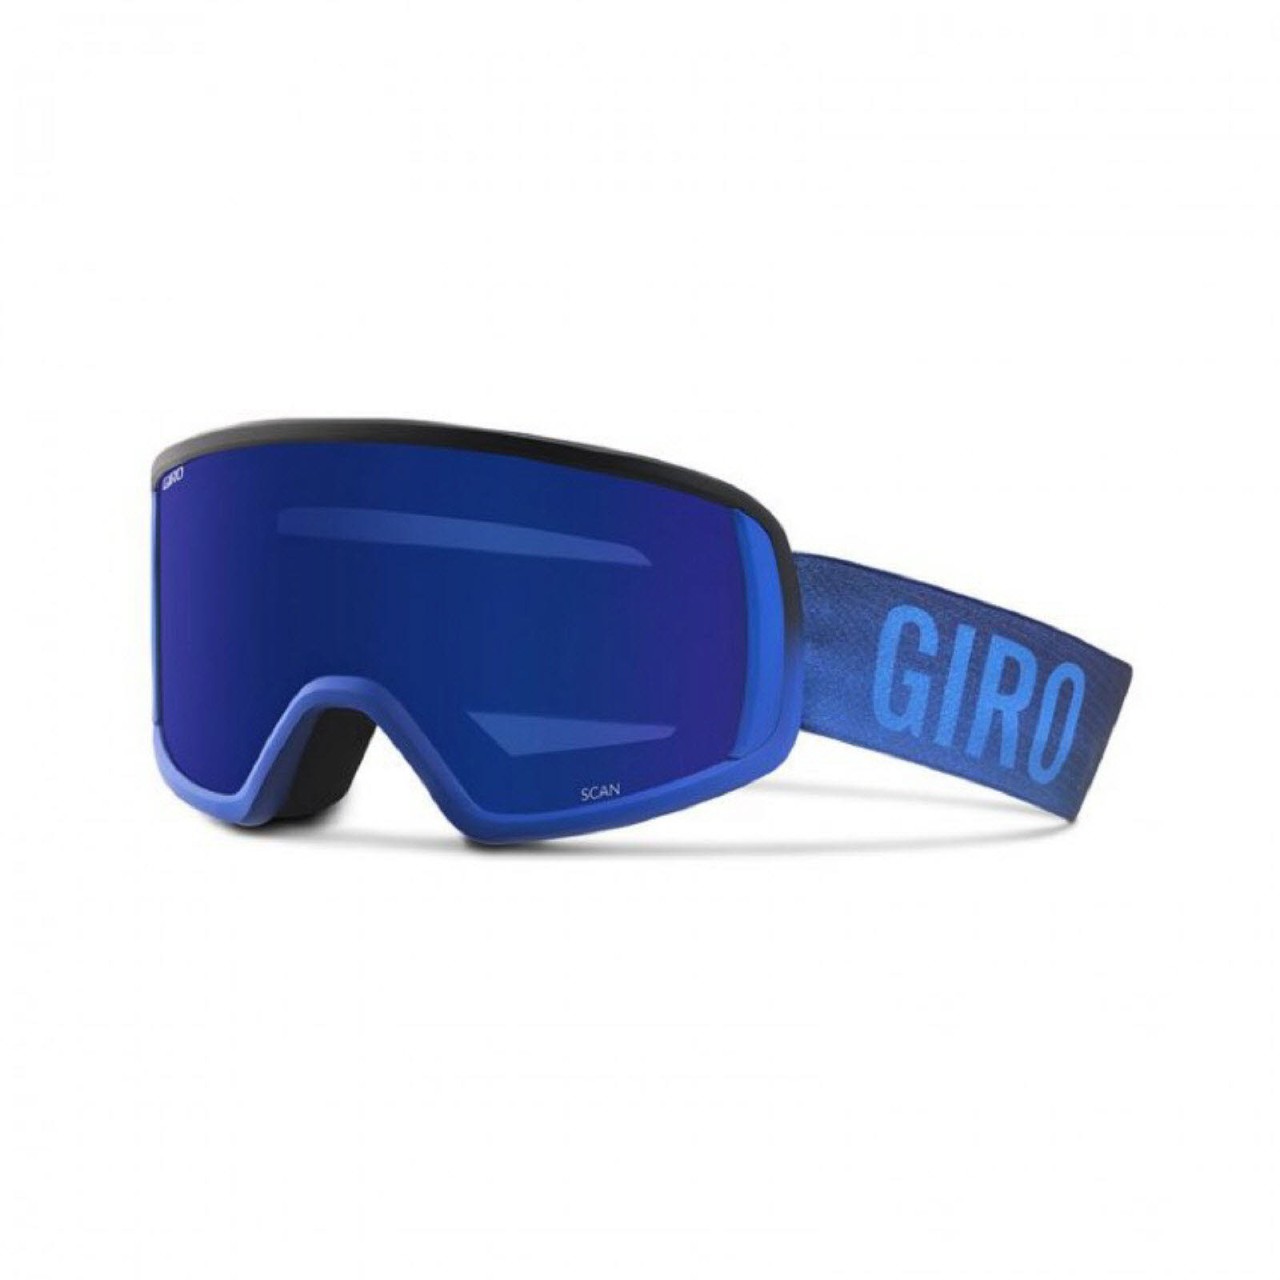 Skibrille Scan von Giro